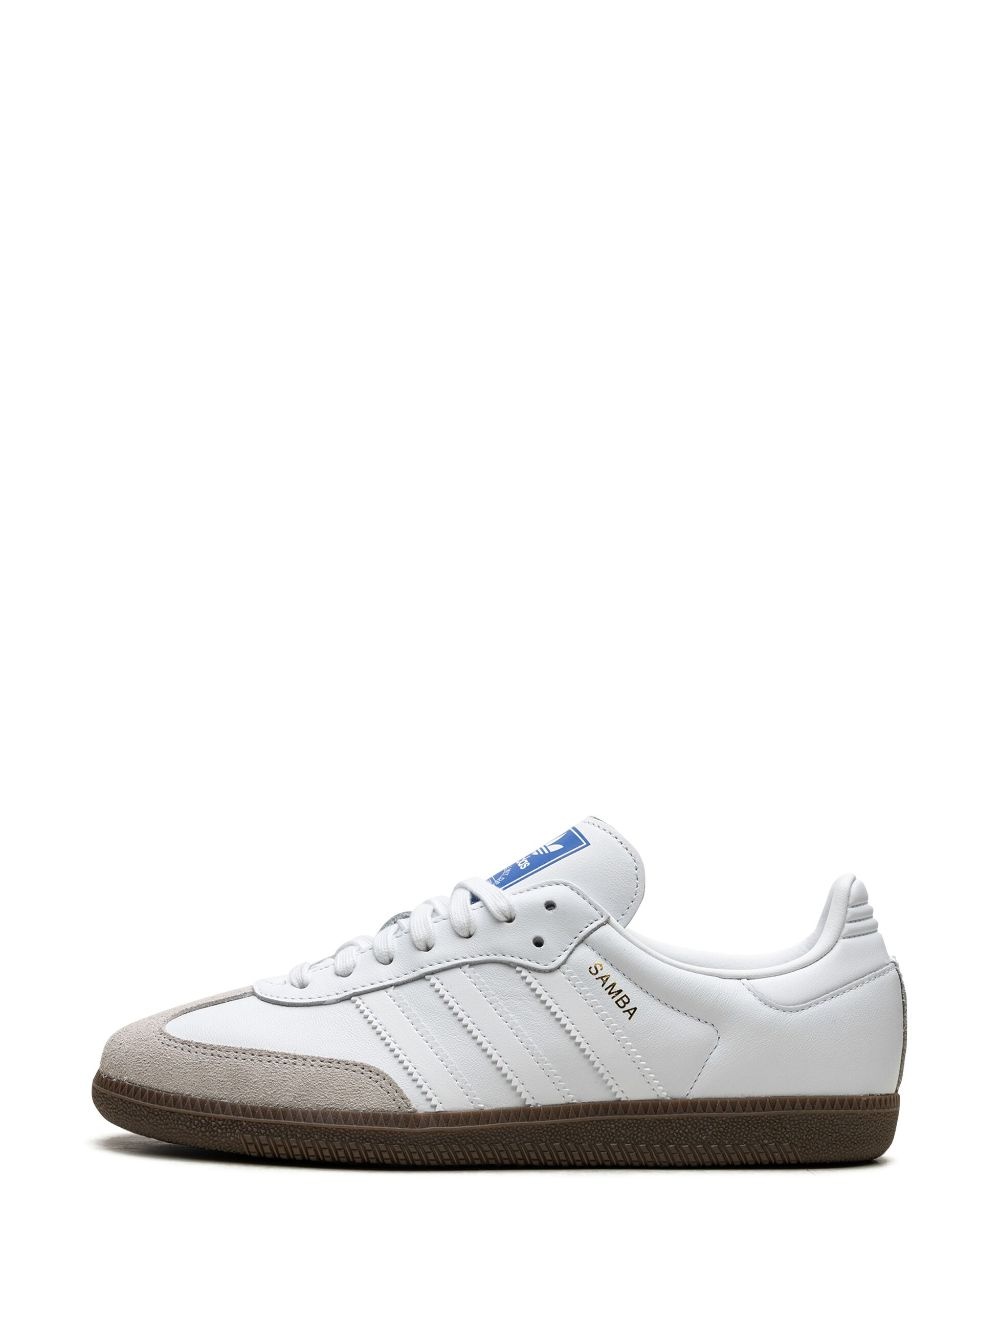 Samba OG "Double White Gum" sneakers - 6